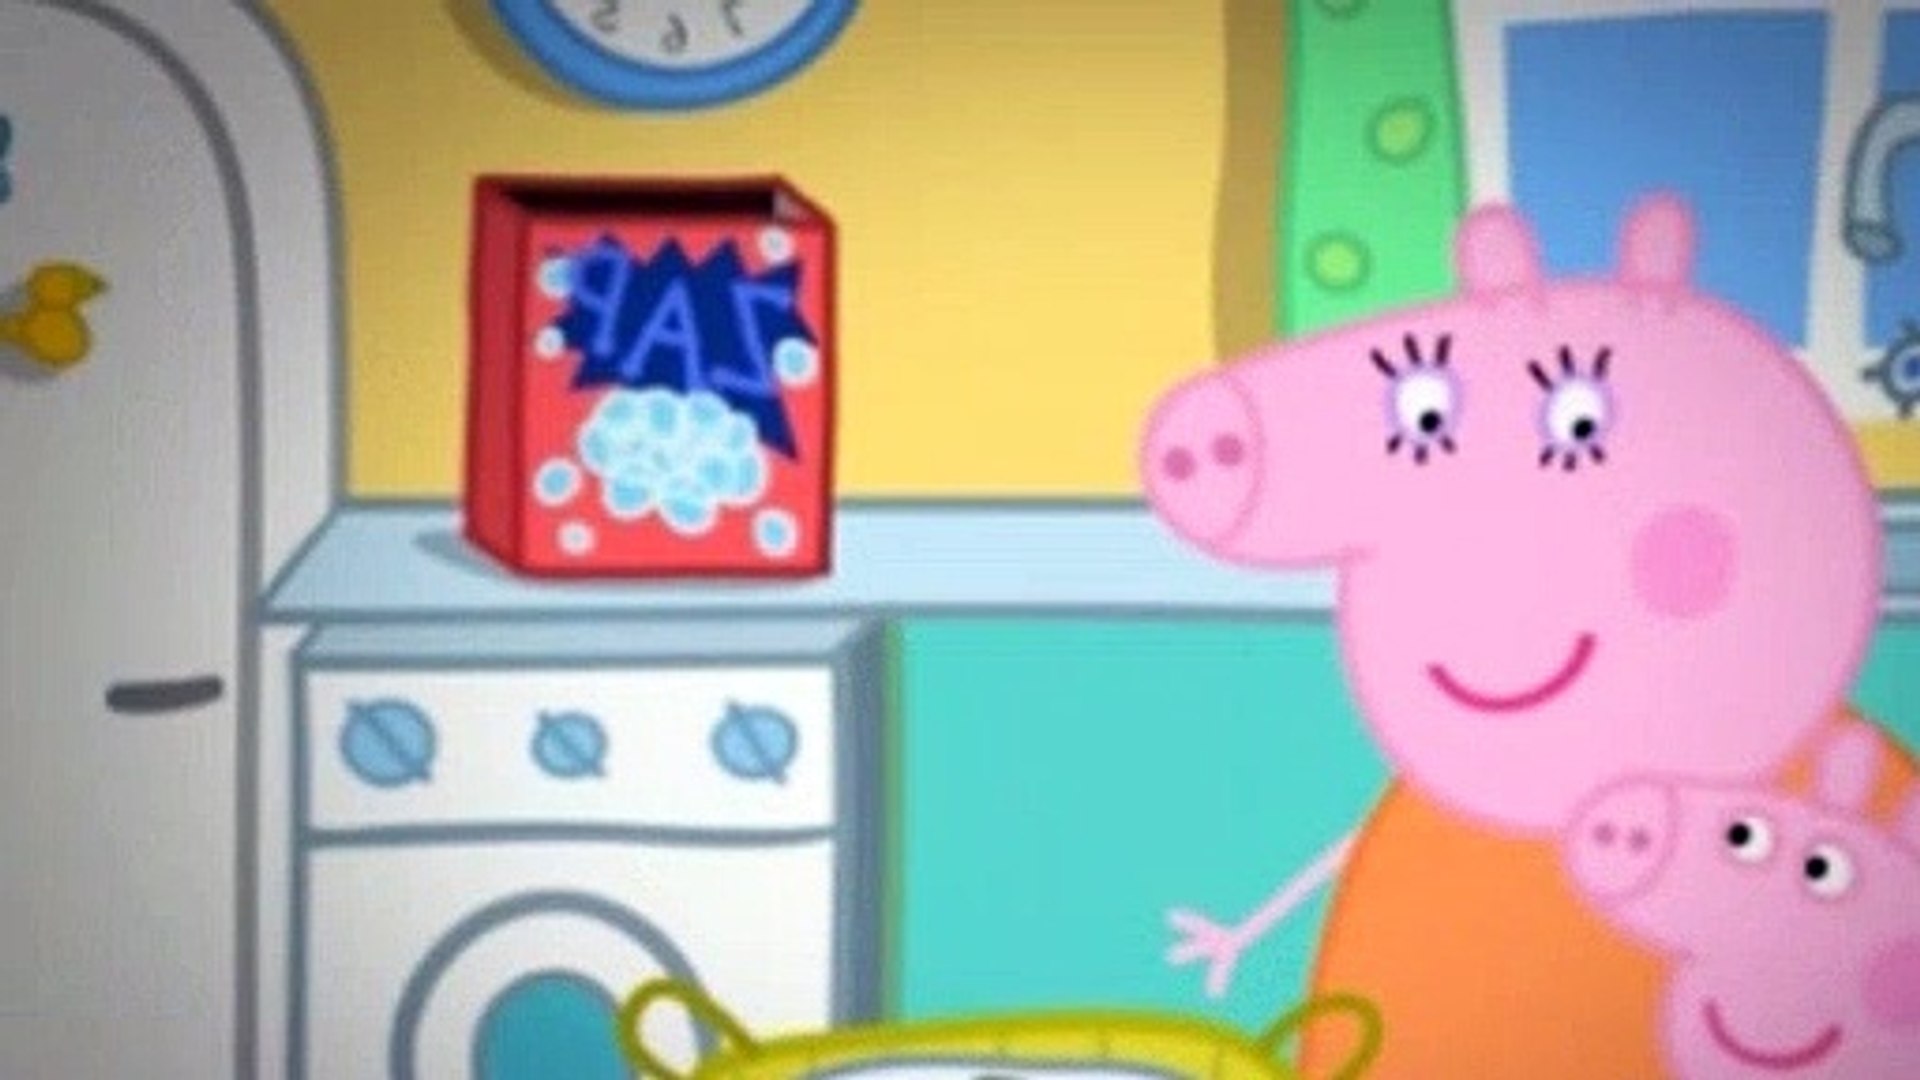 Peppa Pig 9 videos - Dailymotion